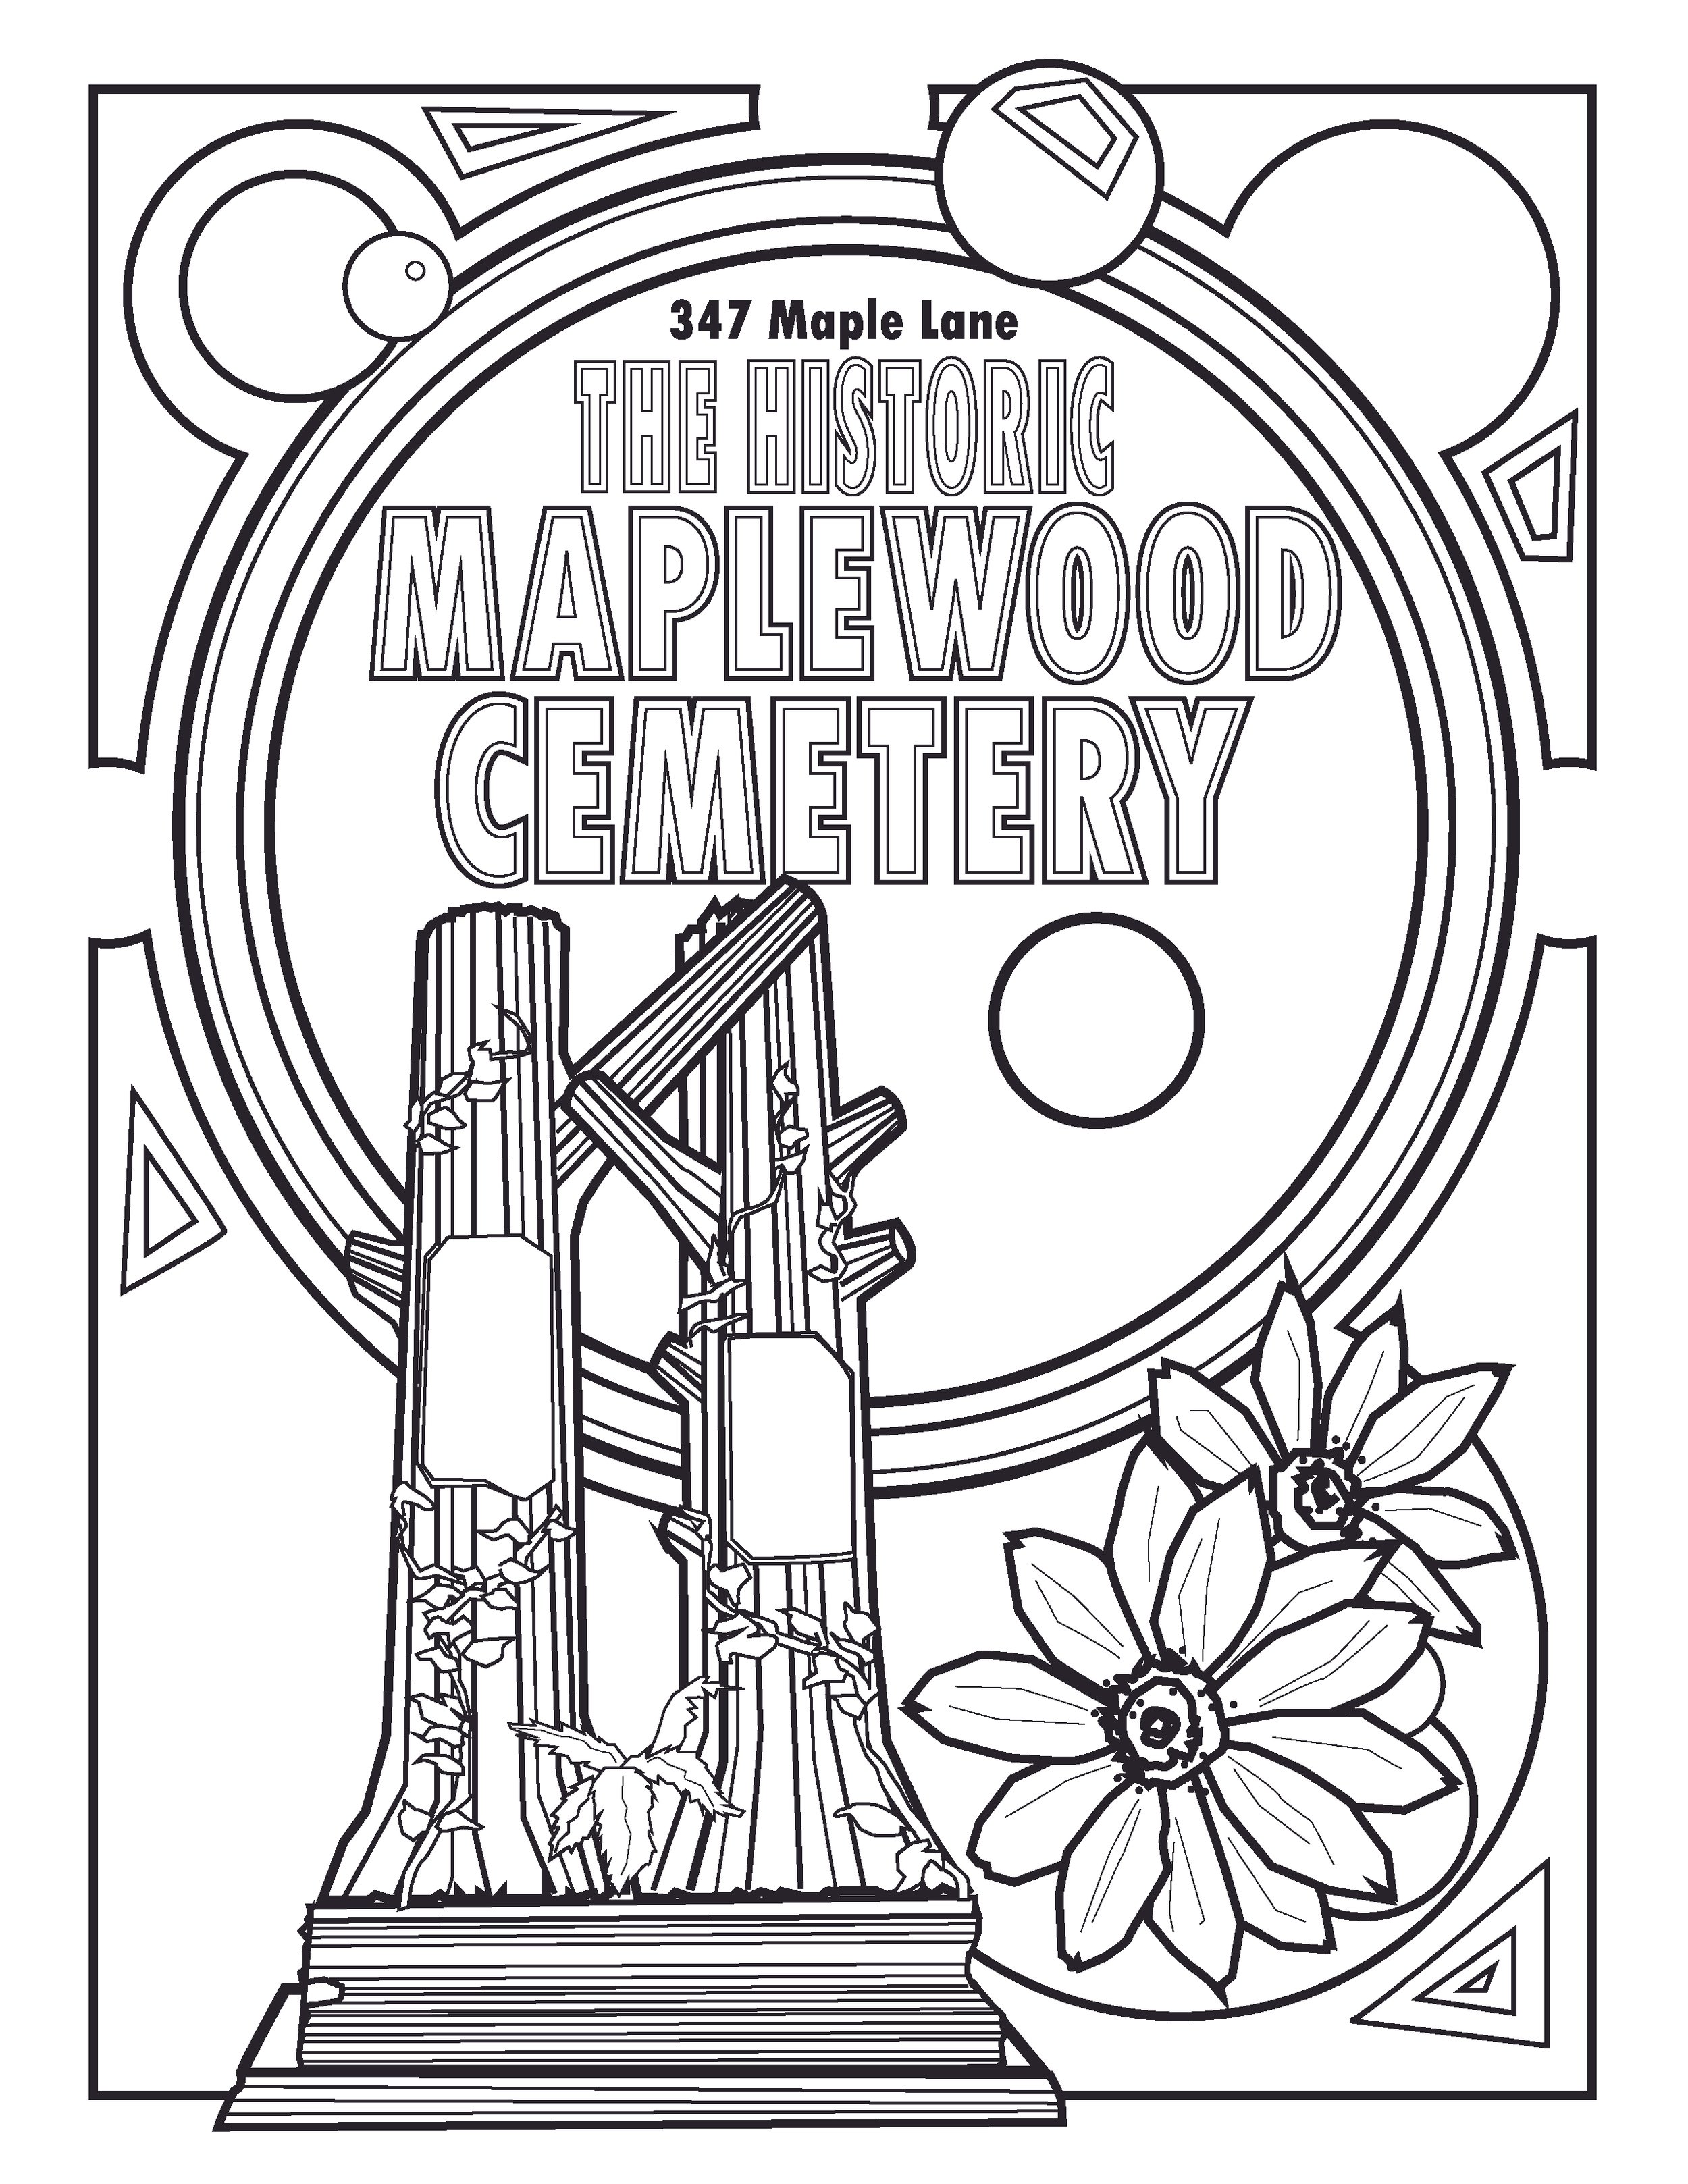 7 maplewood cemetery.jpg